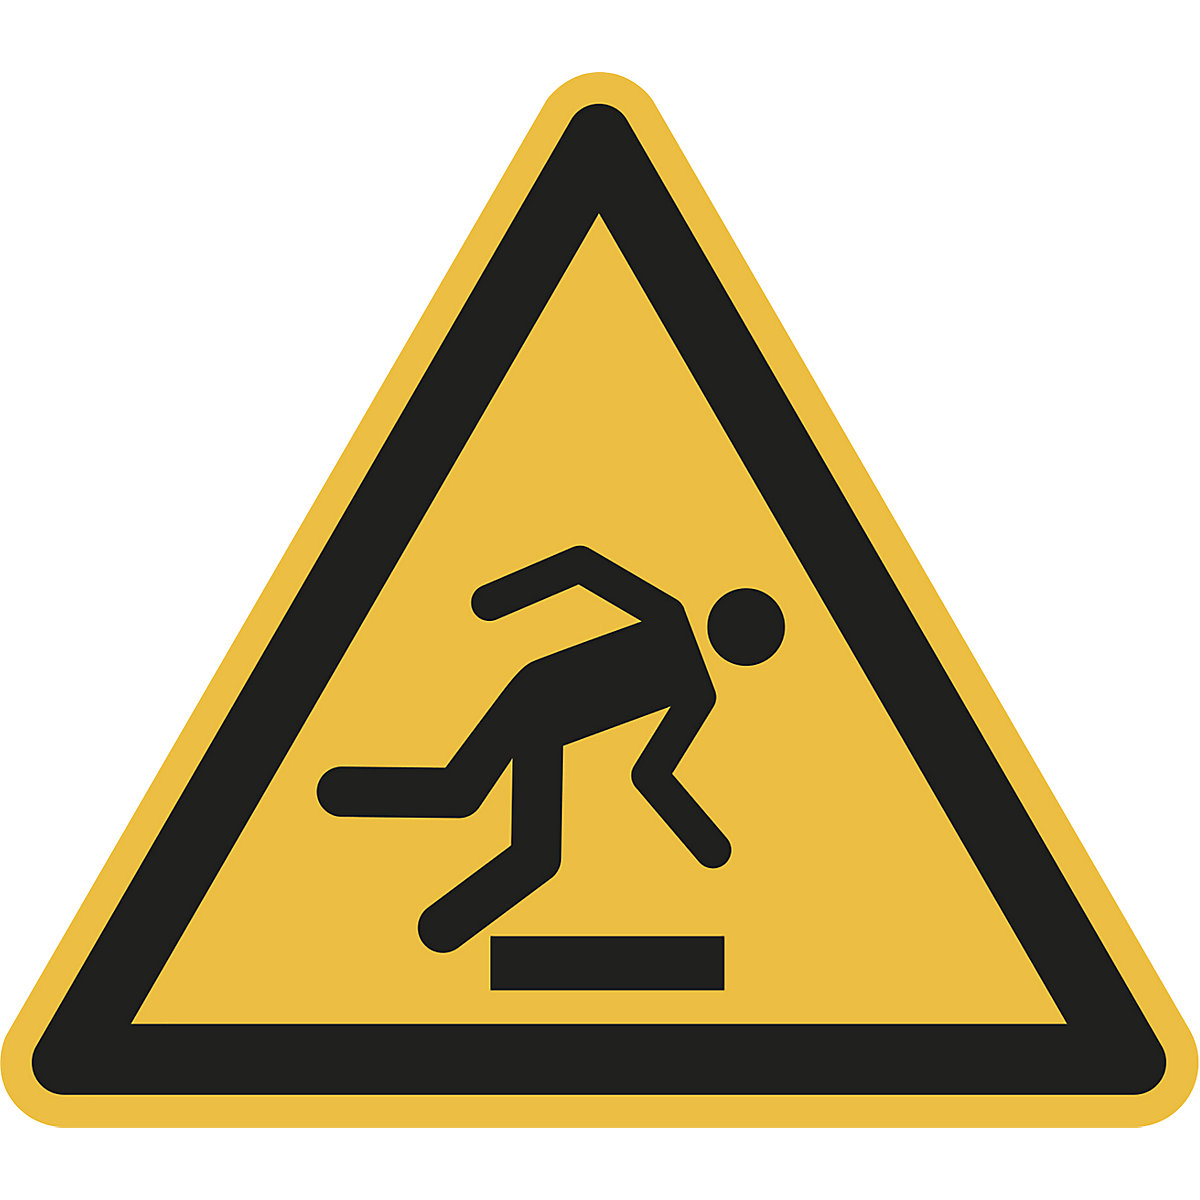 Hazard signs